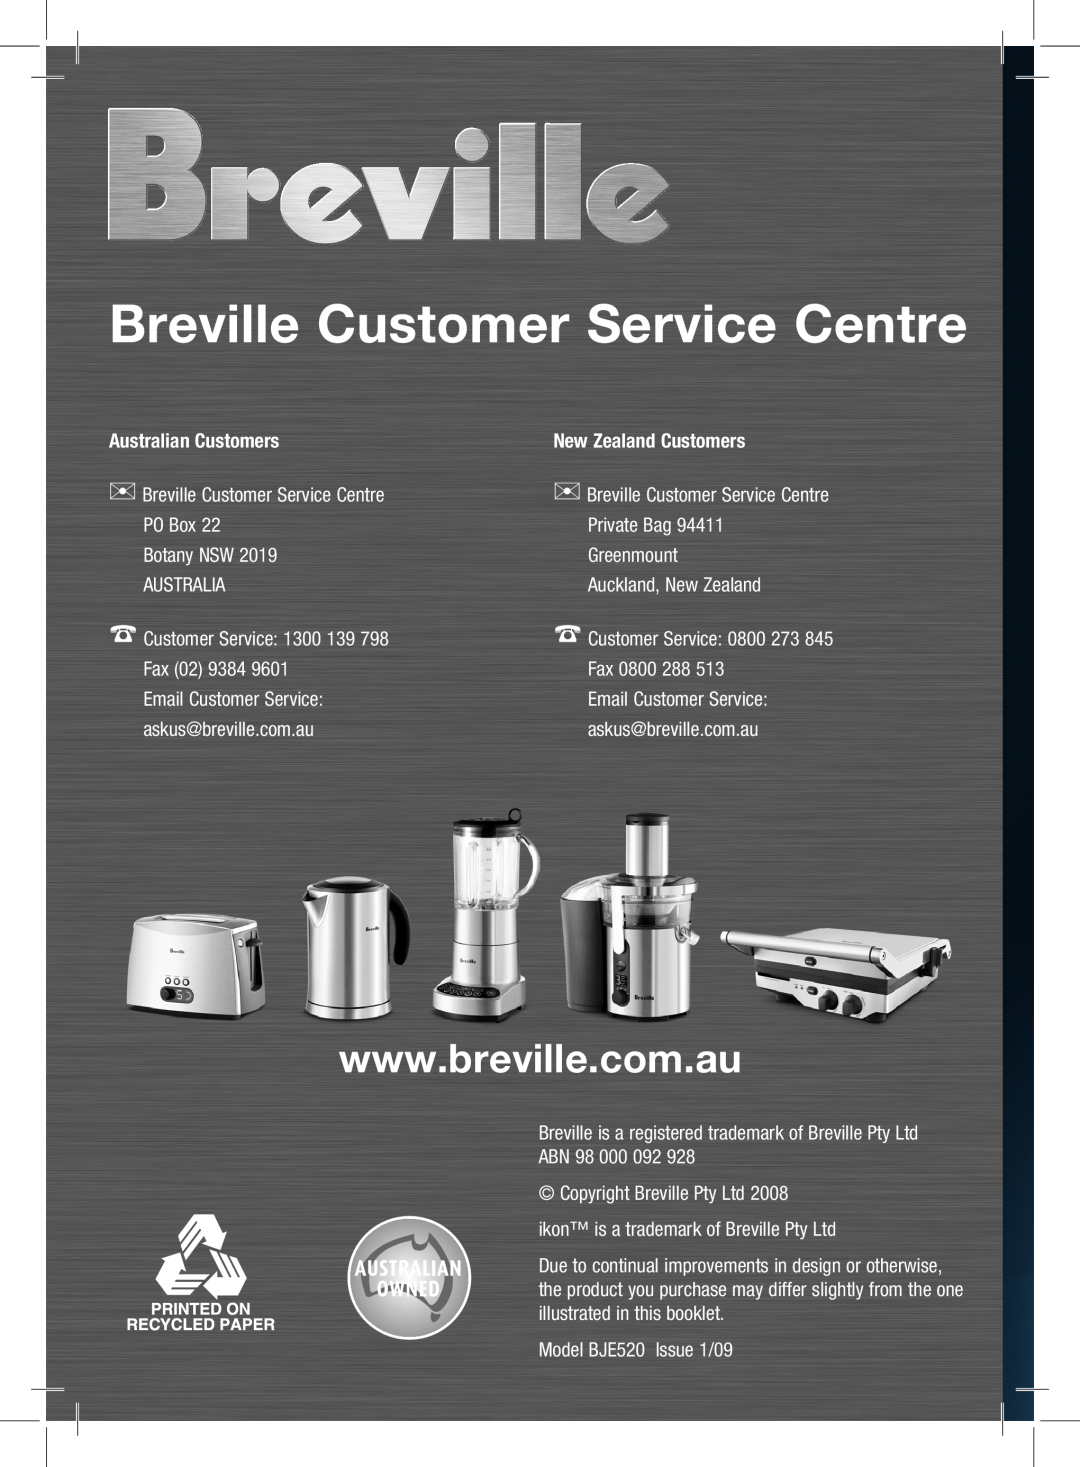 Breville BJE520 manual Australian Customers, New Zealand Customers, Breville Customer Service Centre 